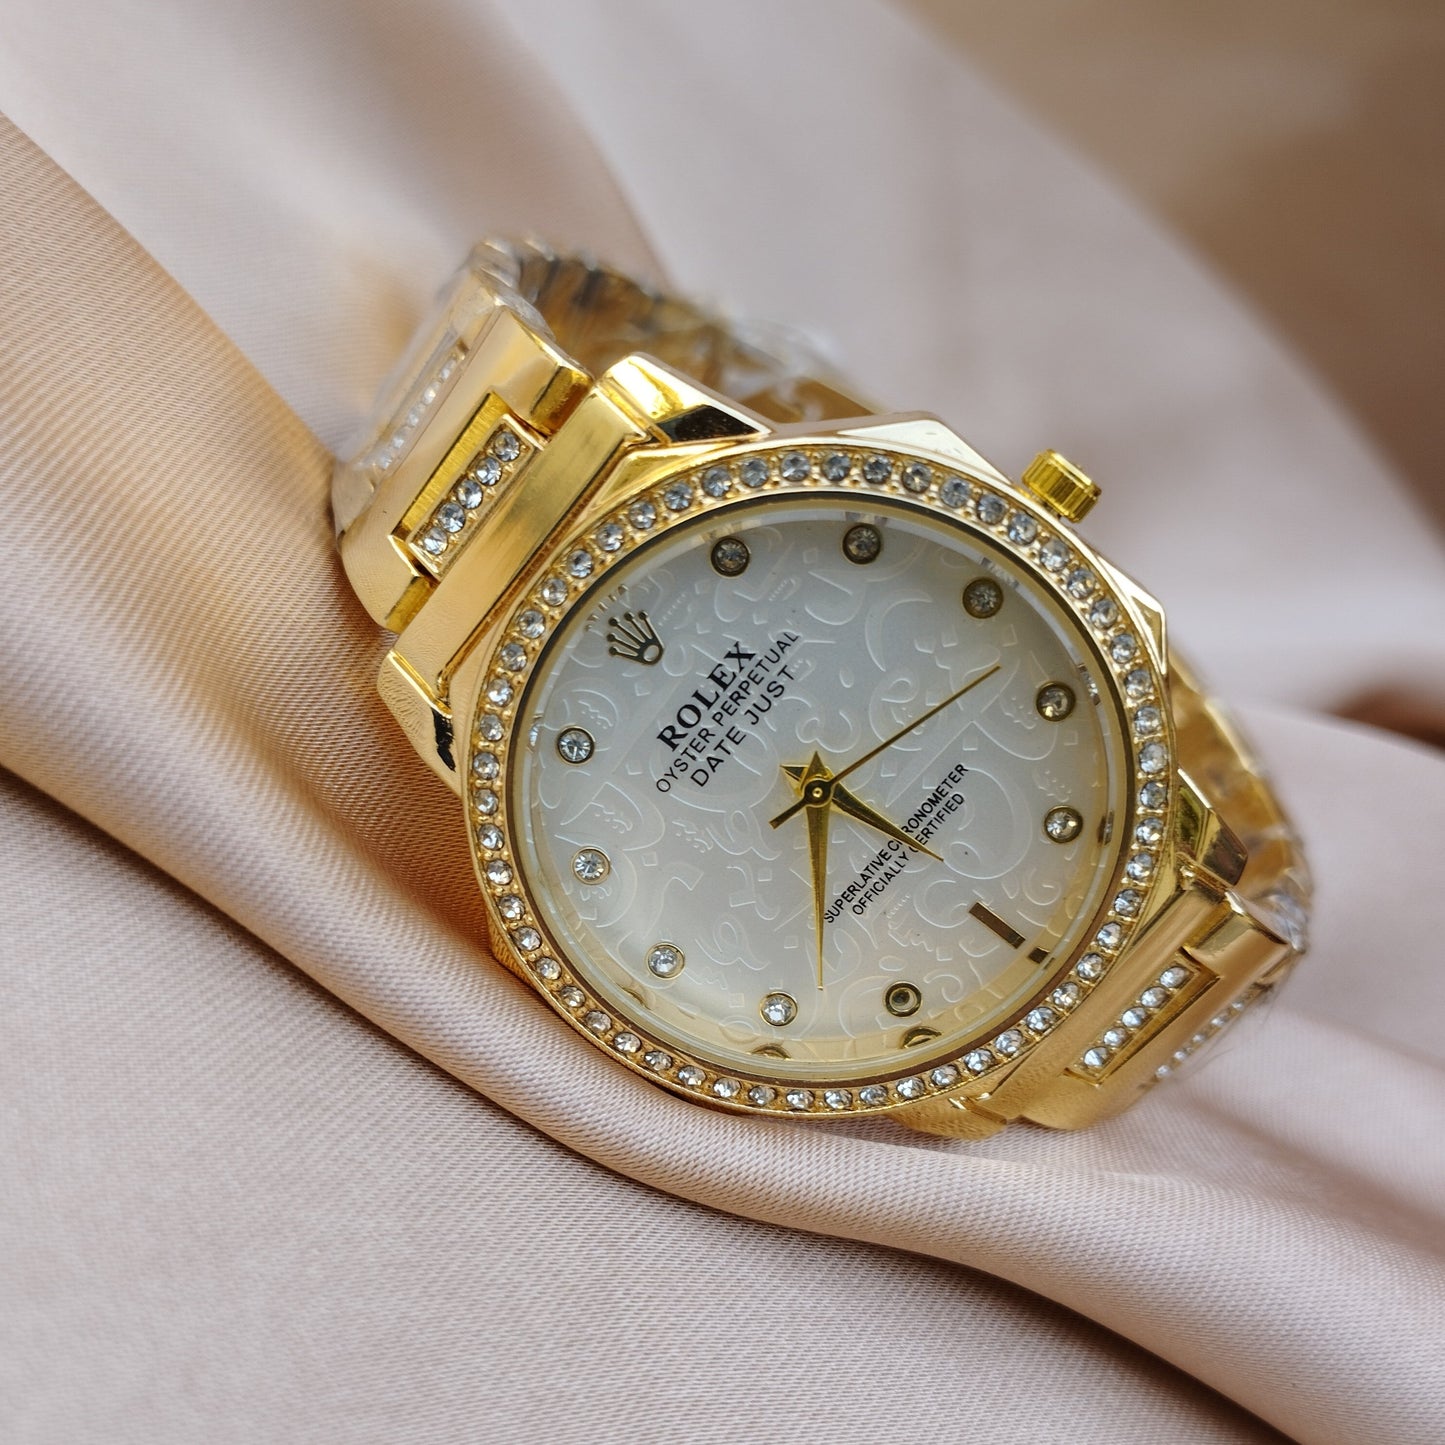 Rolex White Golden Watch